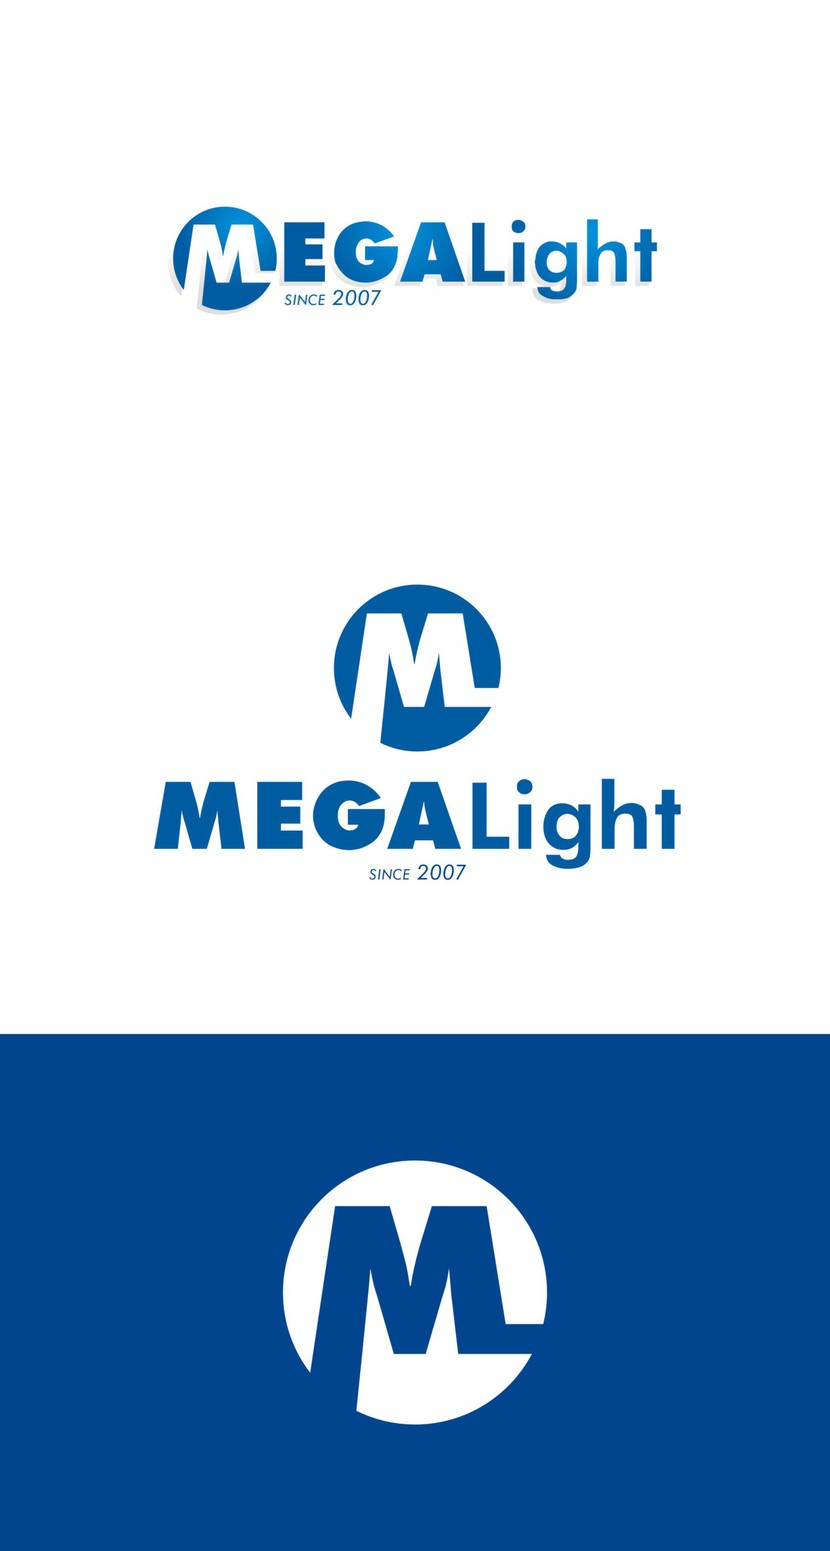 Стабильная уверенность
компании, проверенной временем,
гарантирует качественный, МЕГА подход 
к каждой детали - Создание нового логотипа компании МегаЛайт